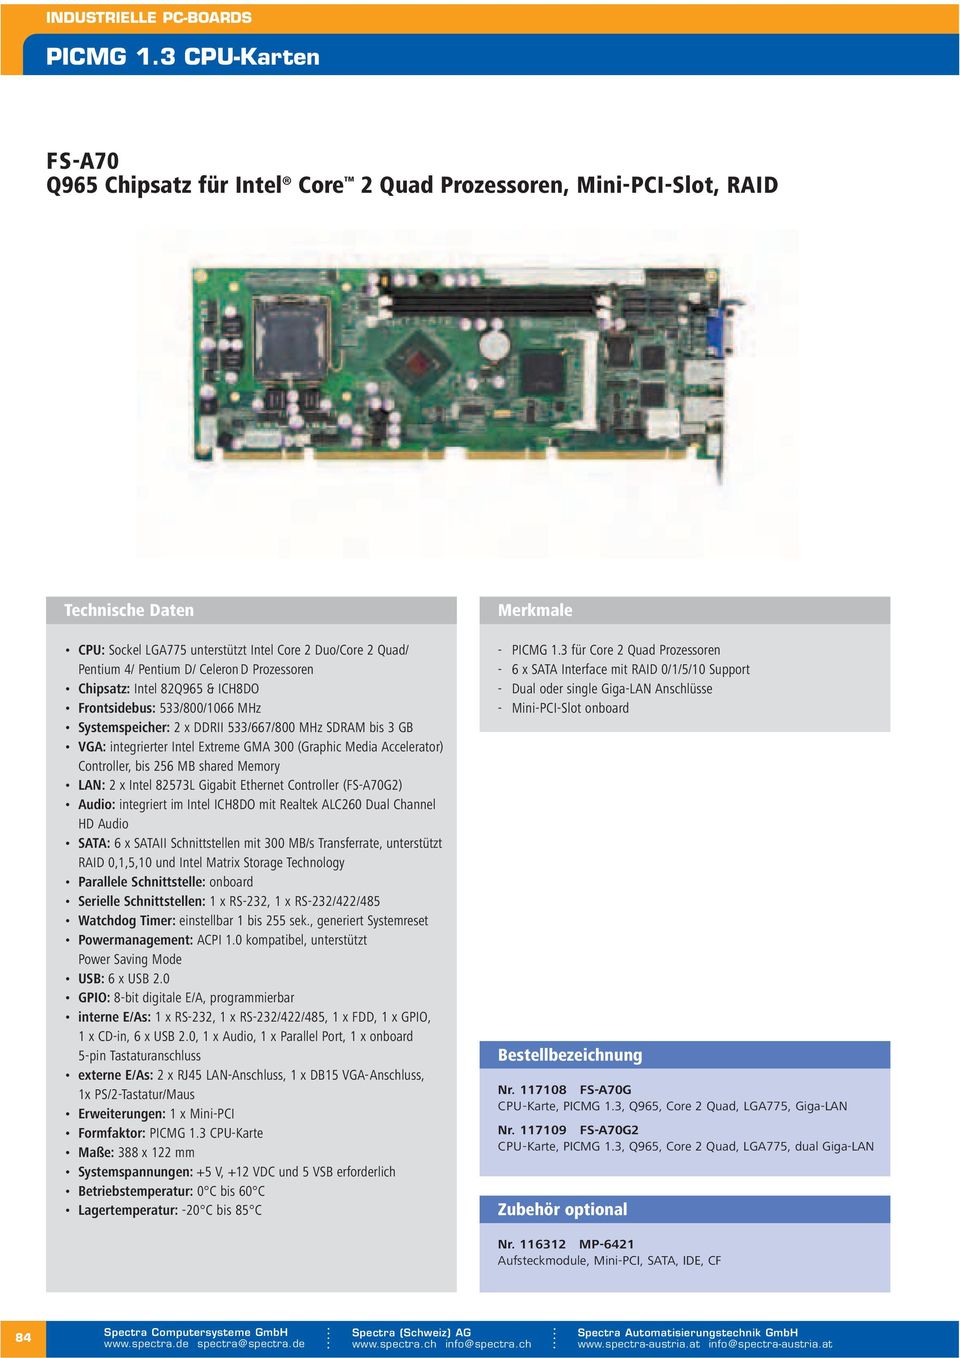 Chipsatz: Intel 82Q965 & ICH8DO Frontsidebus: 533/800/1066 MHz Systemspeicher: 2 x DDRII 533/667/800 MHz SDRAM bis 3 GB VGA: er Intel Extreme GMA 300 (Graphic Media Accelerator) Controller, bis 256